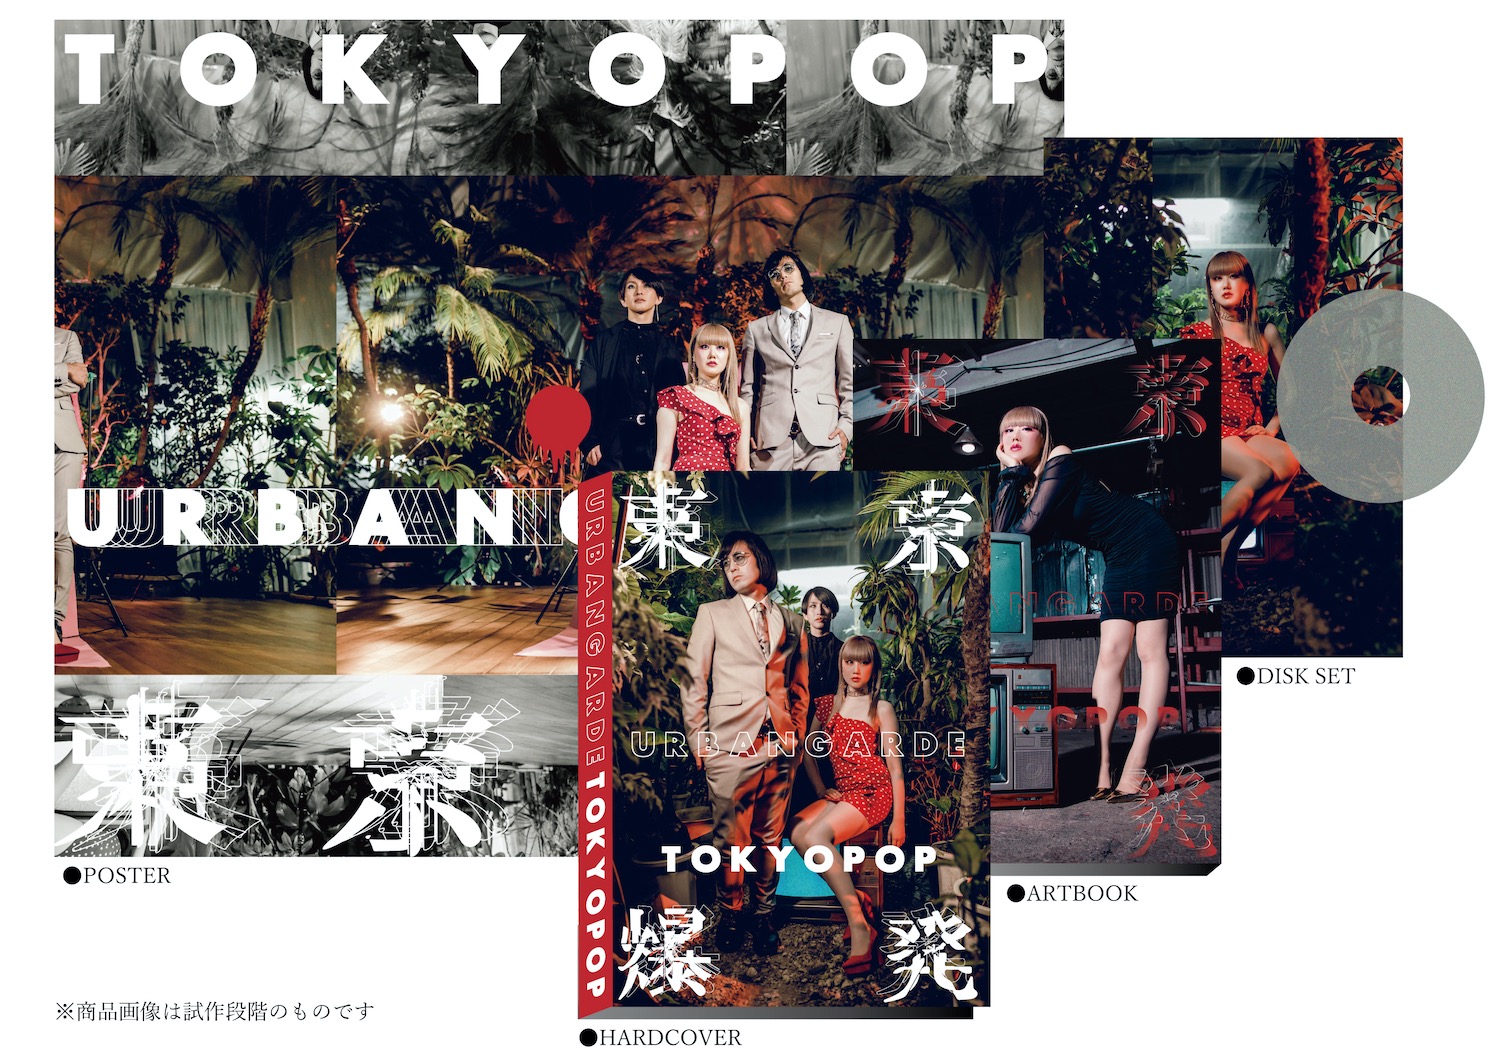 アーバンギャルド 年元日に発売する新作アルバム Tokyopop 収録曲と豪華盤の内容を発表 Uroros